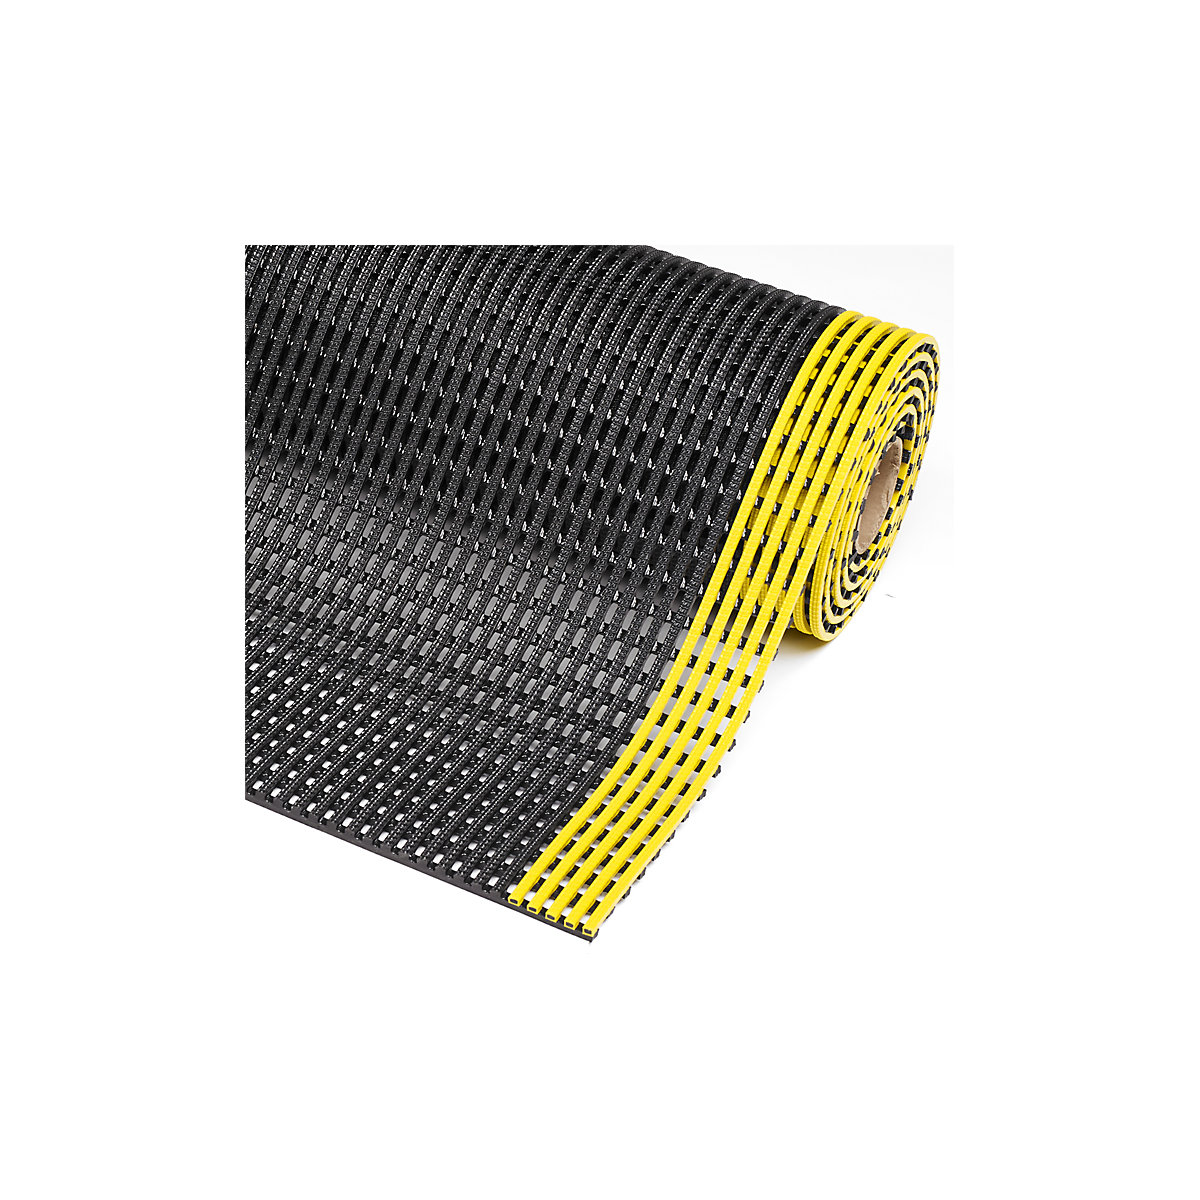 Gittermatte Flexdek™ NOTRAX, Breite 1200 mm, pro lfd. m, schwarz/gelb-2